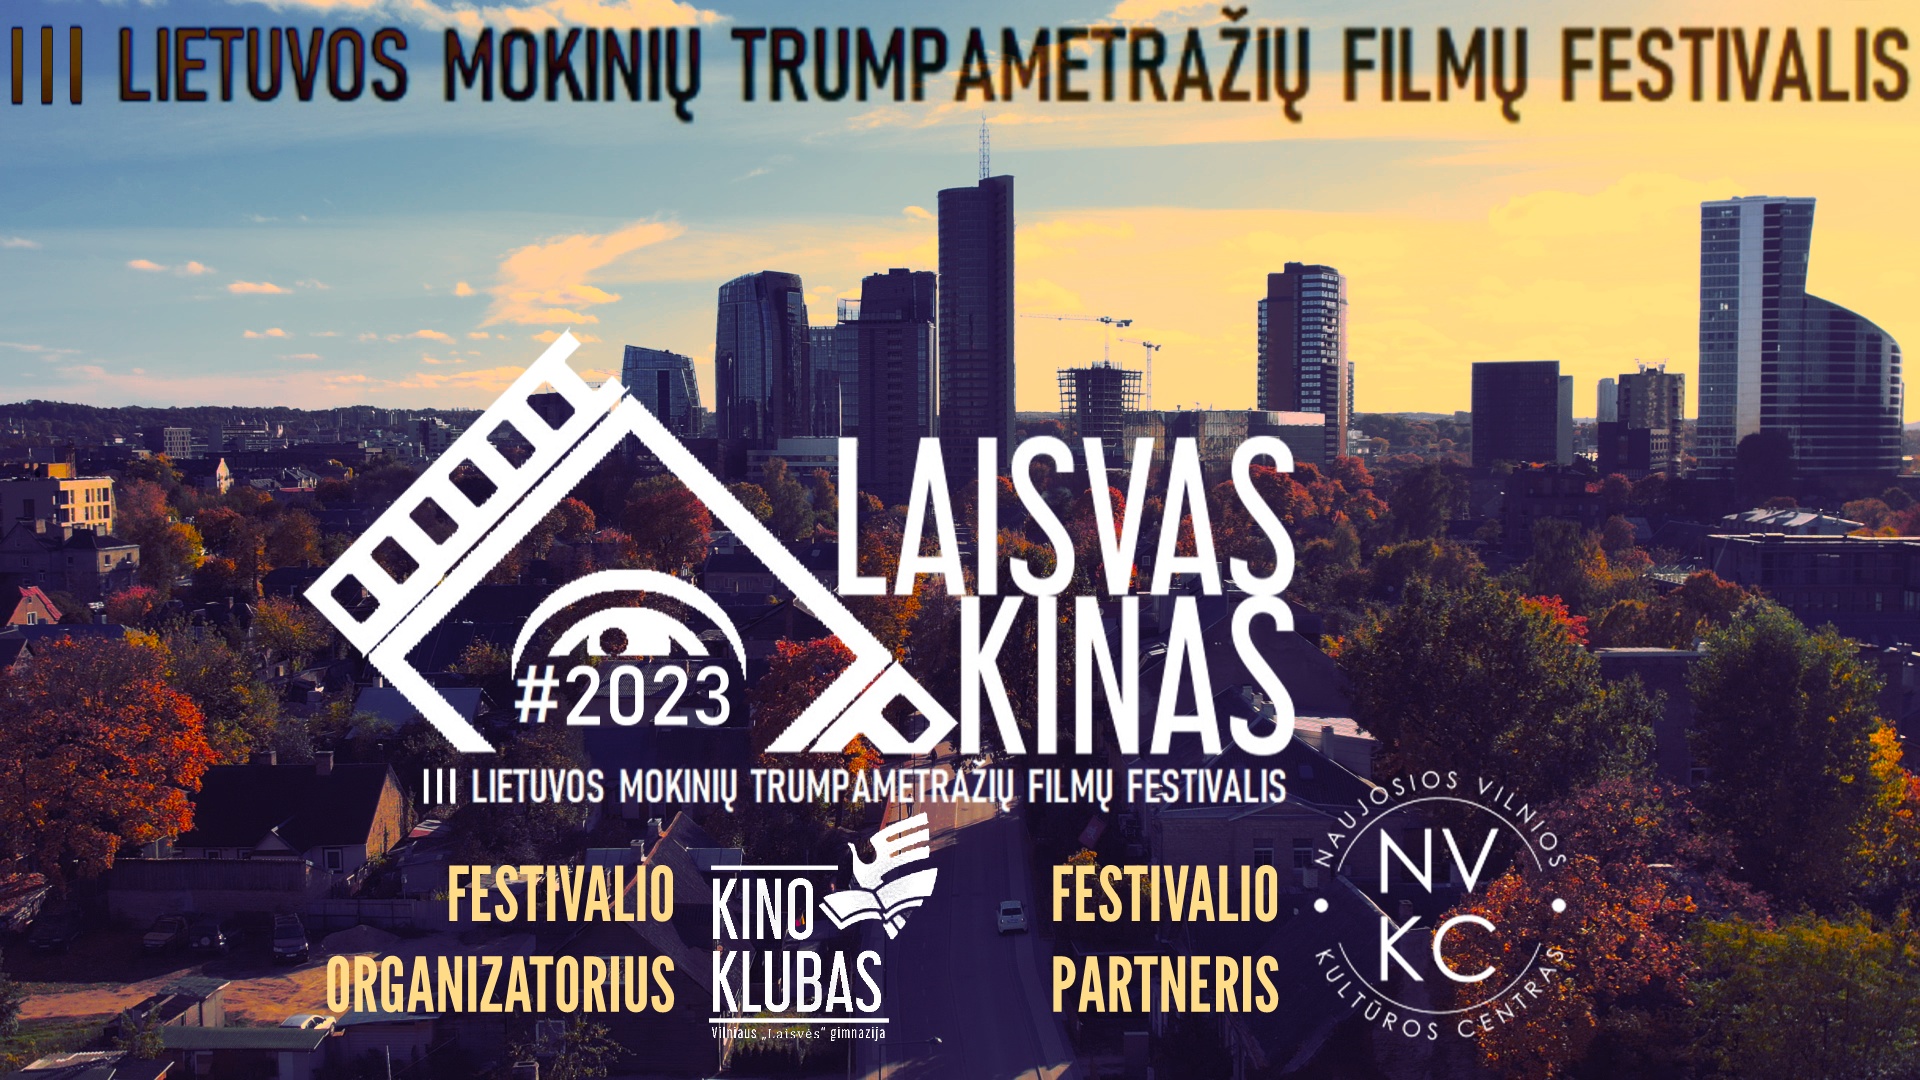 Kviečiame dalyvauti Lietuvos mokinių kino festivalyje „Laisvas kinas 2023“!